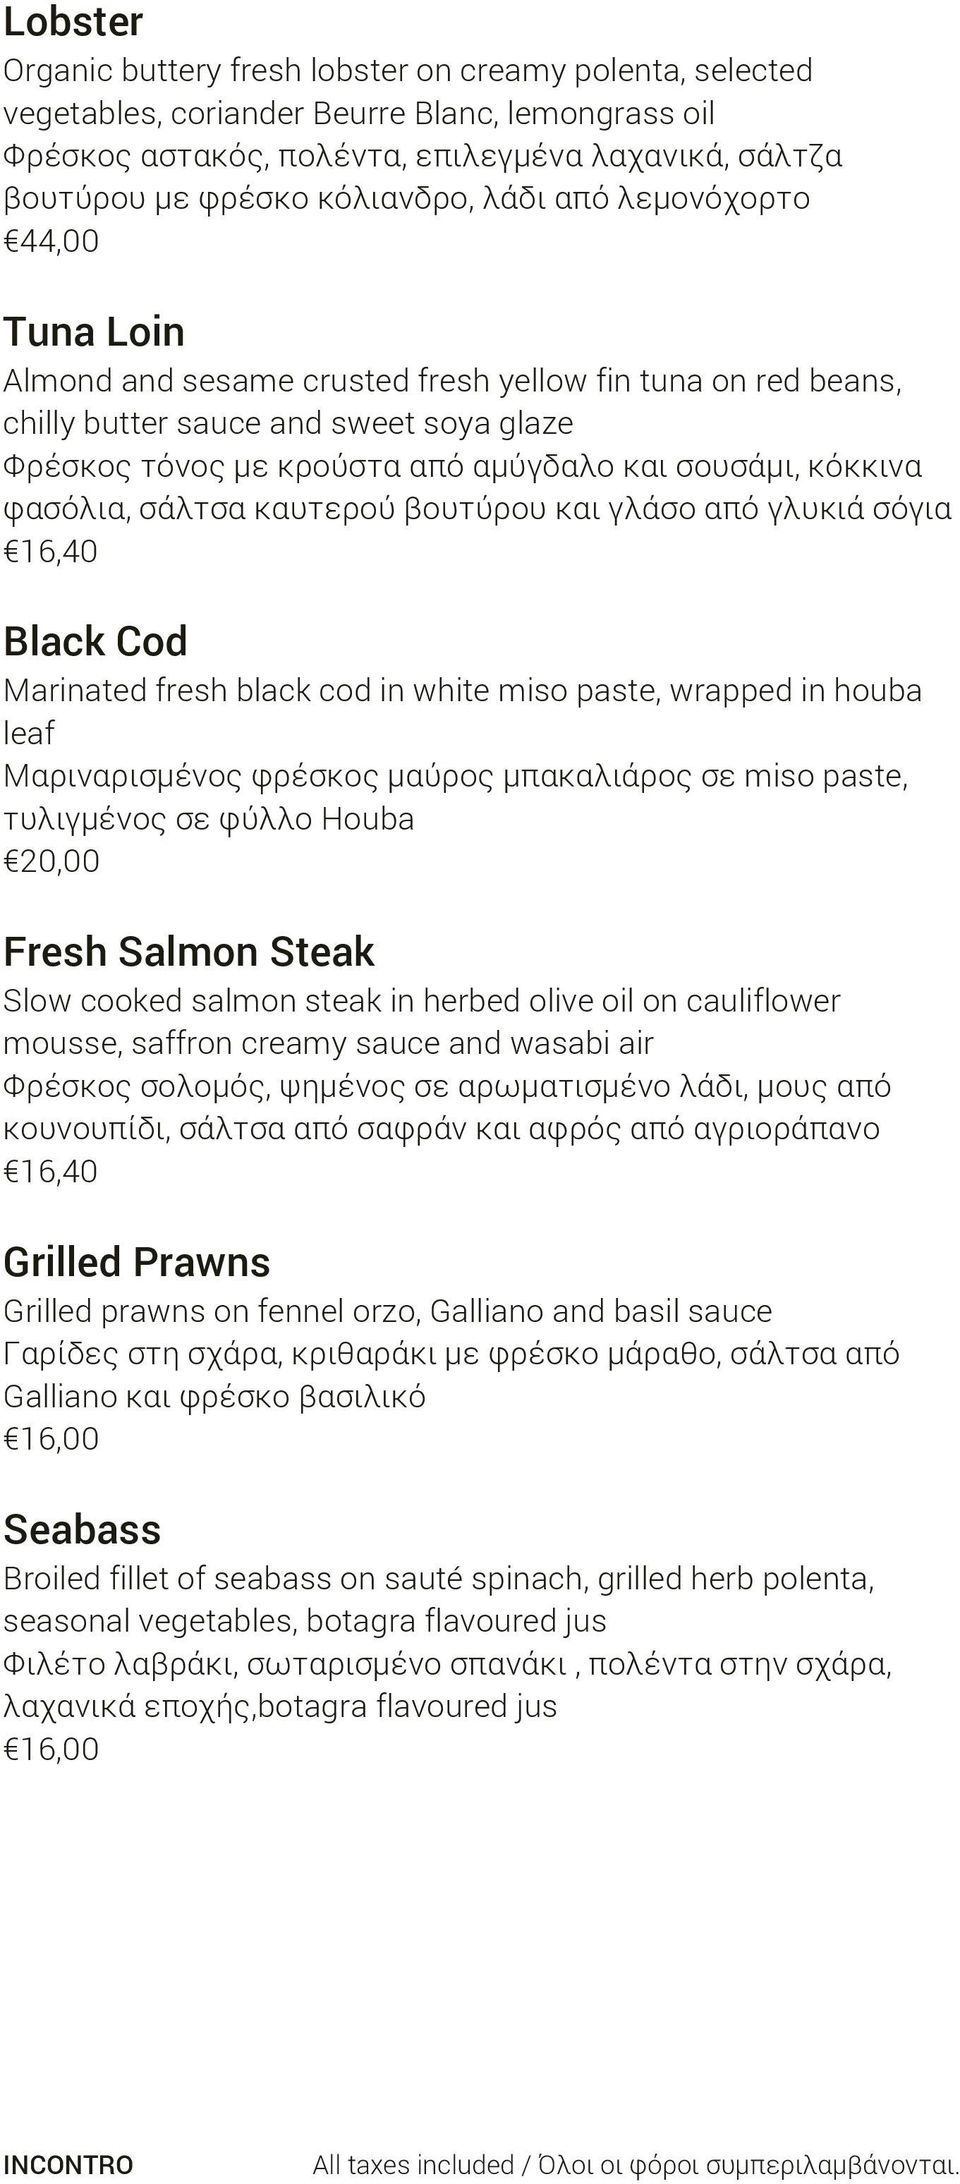 σουσάμι, κόκκινα φασόλια, σάλτσα καυτερού βουτύρου και γλάσο από γλυκιά σόγια 16,40 Black Cod Marinated fresh black cod in white miso paste, wrapped in houba leaf Μαριναρισμένος φρέσκος μαύρος